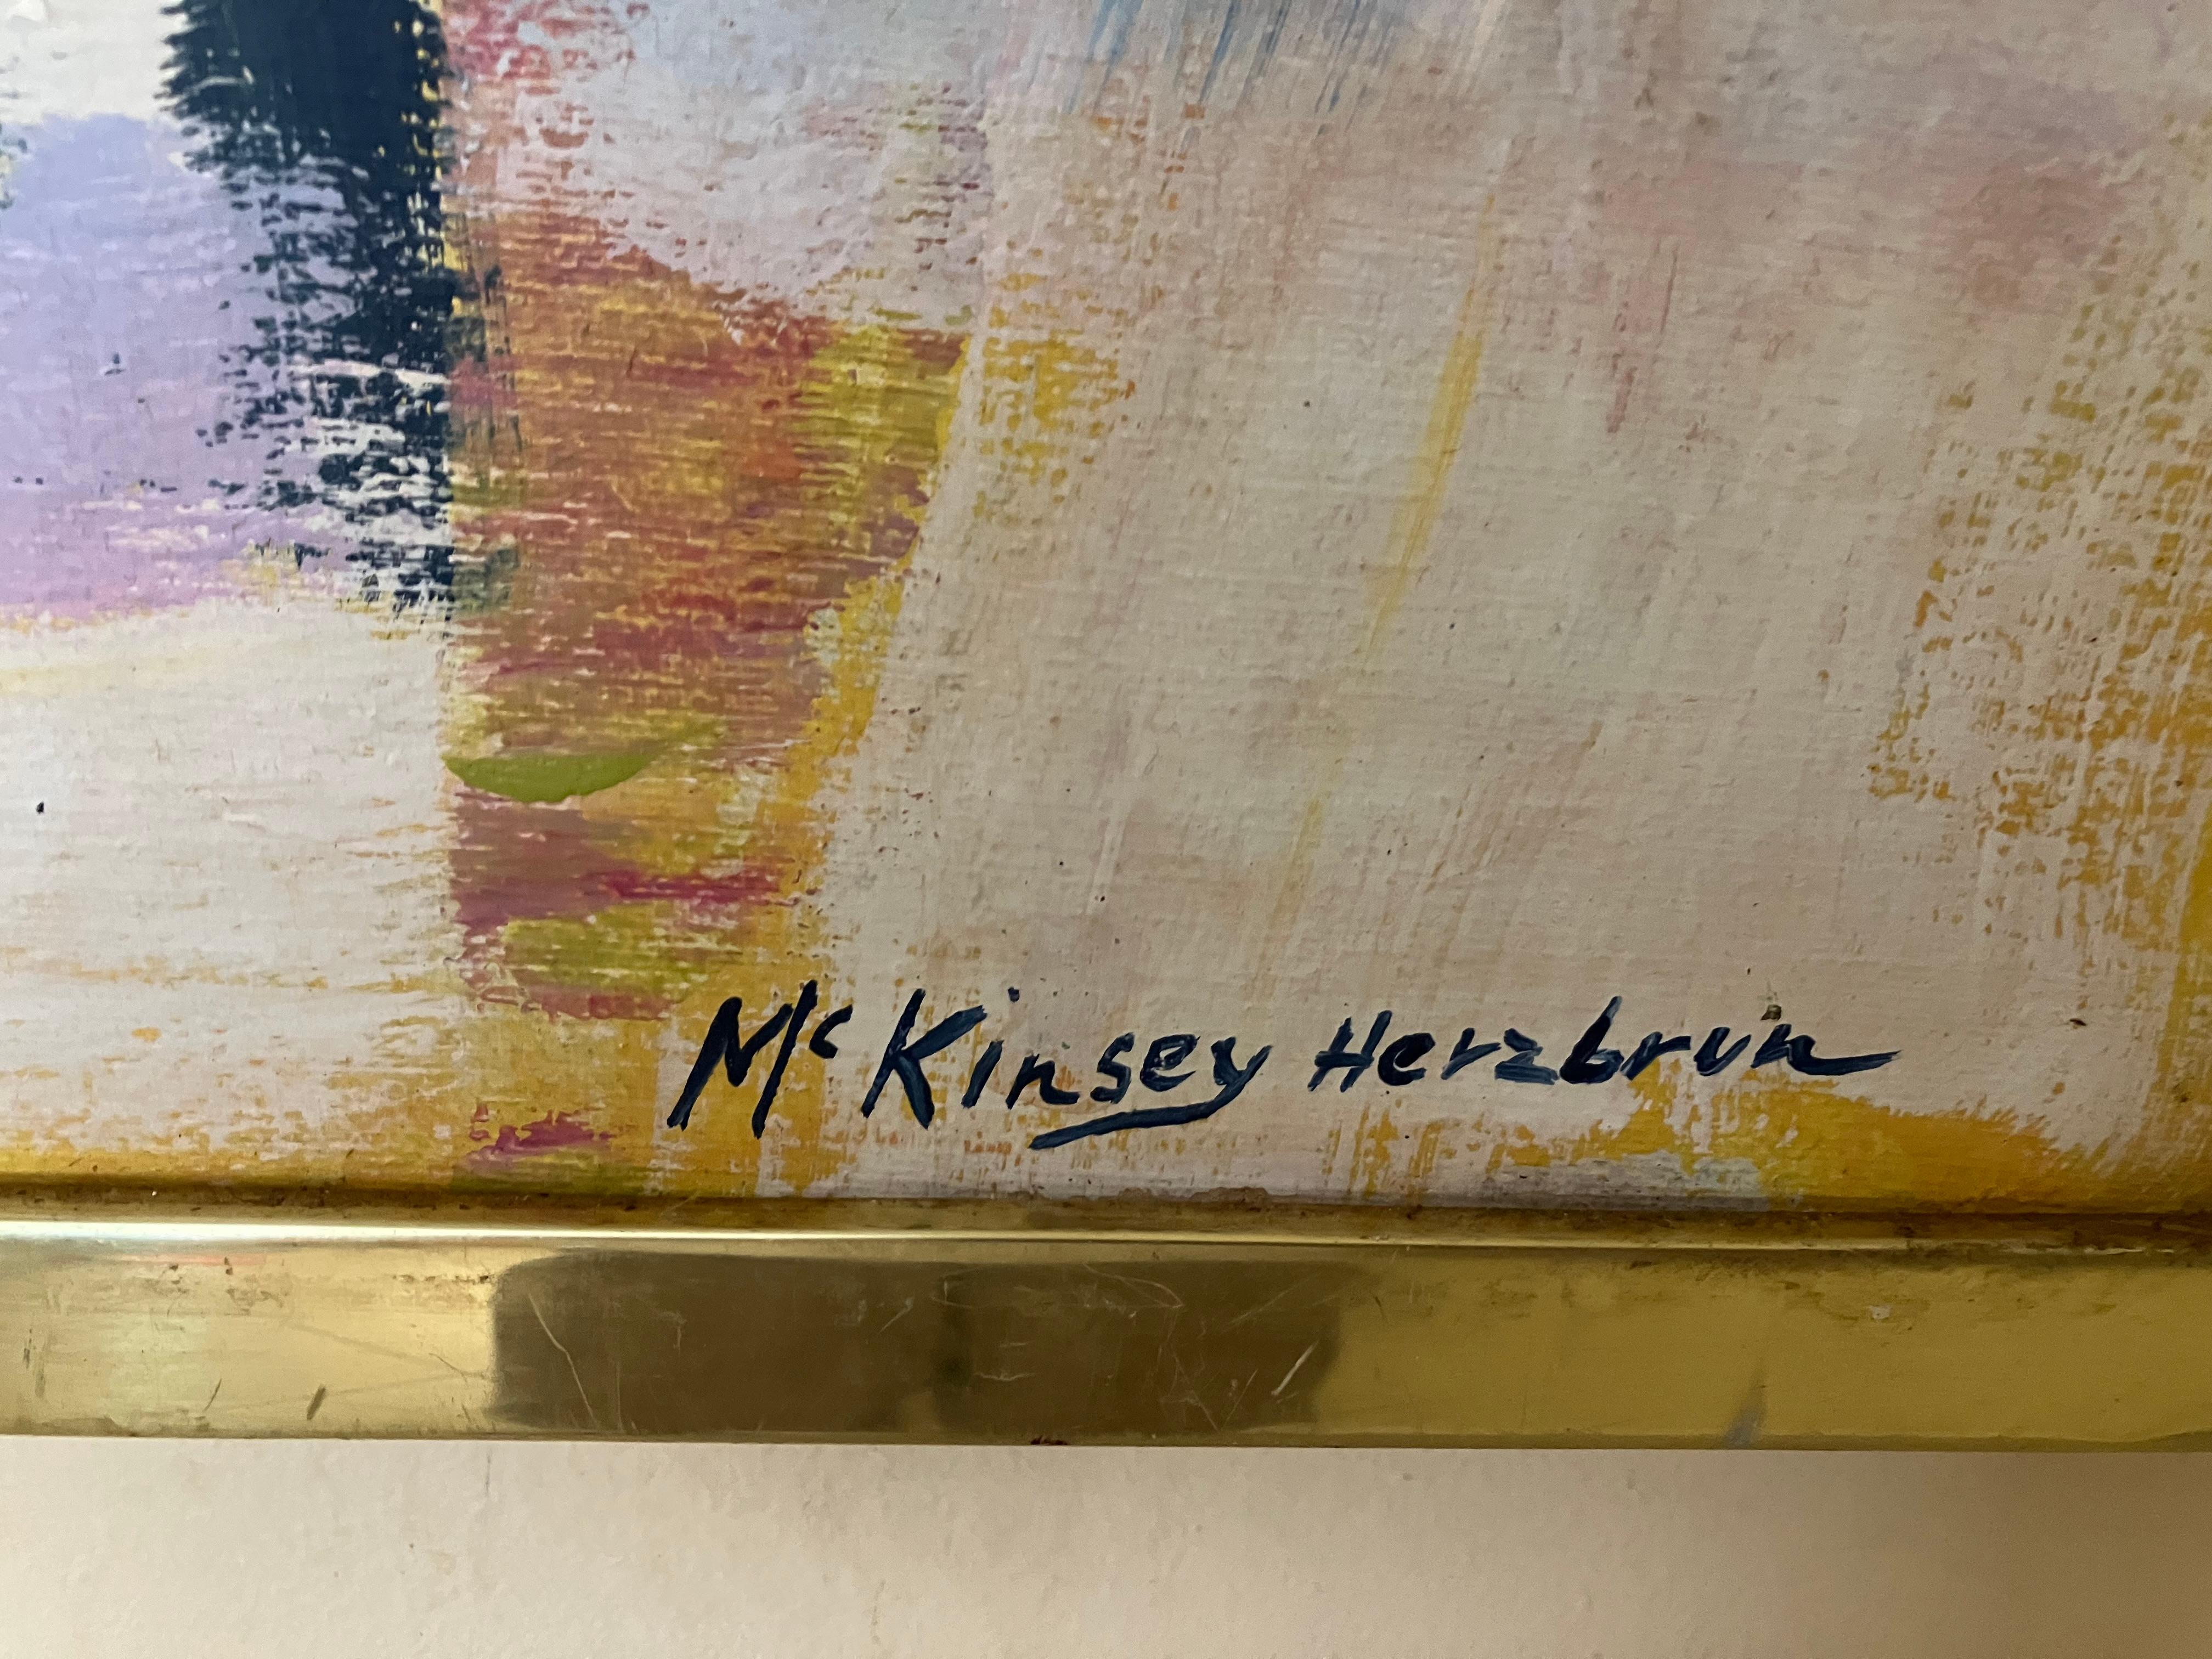  Helene McKinsey Herzbrun Abstrakte Farben im Angebot 2